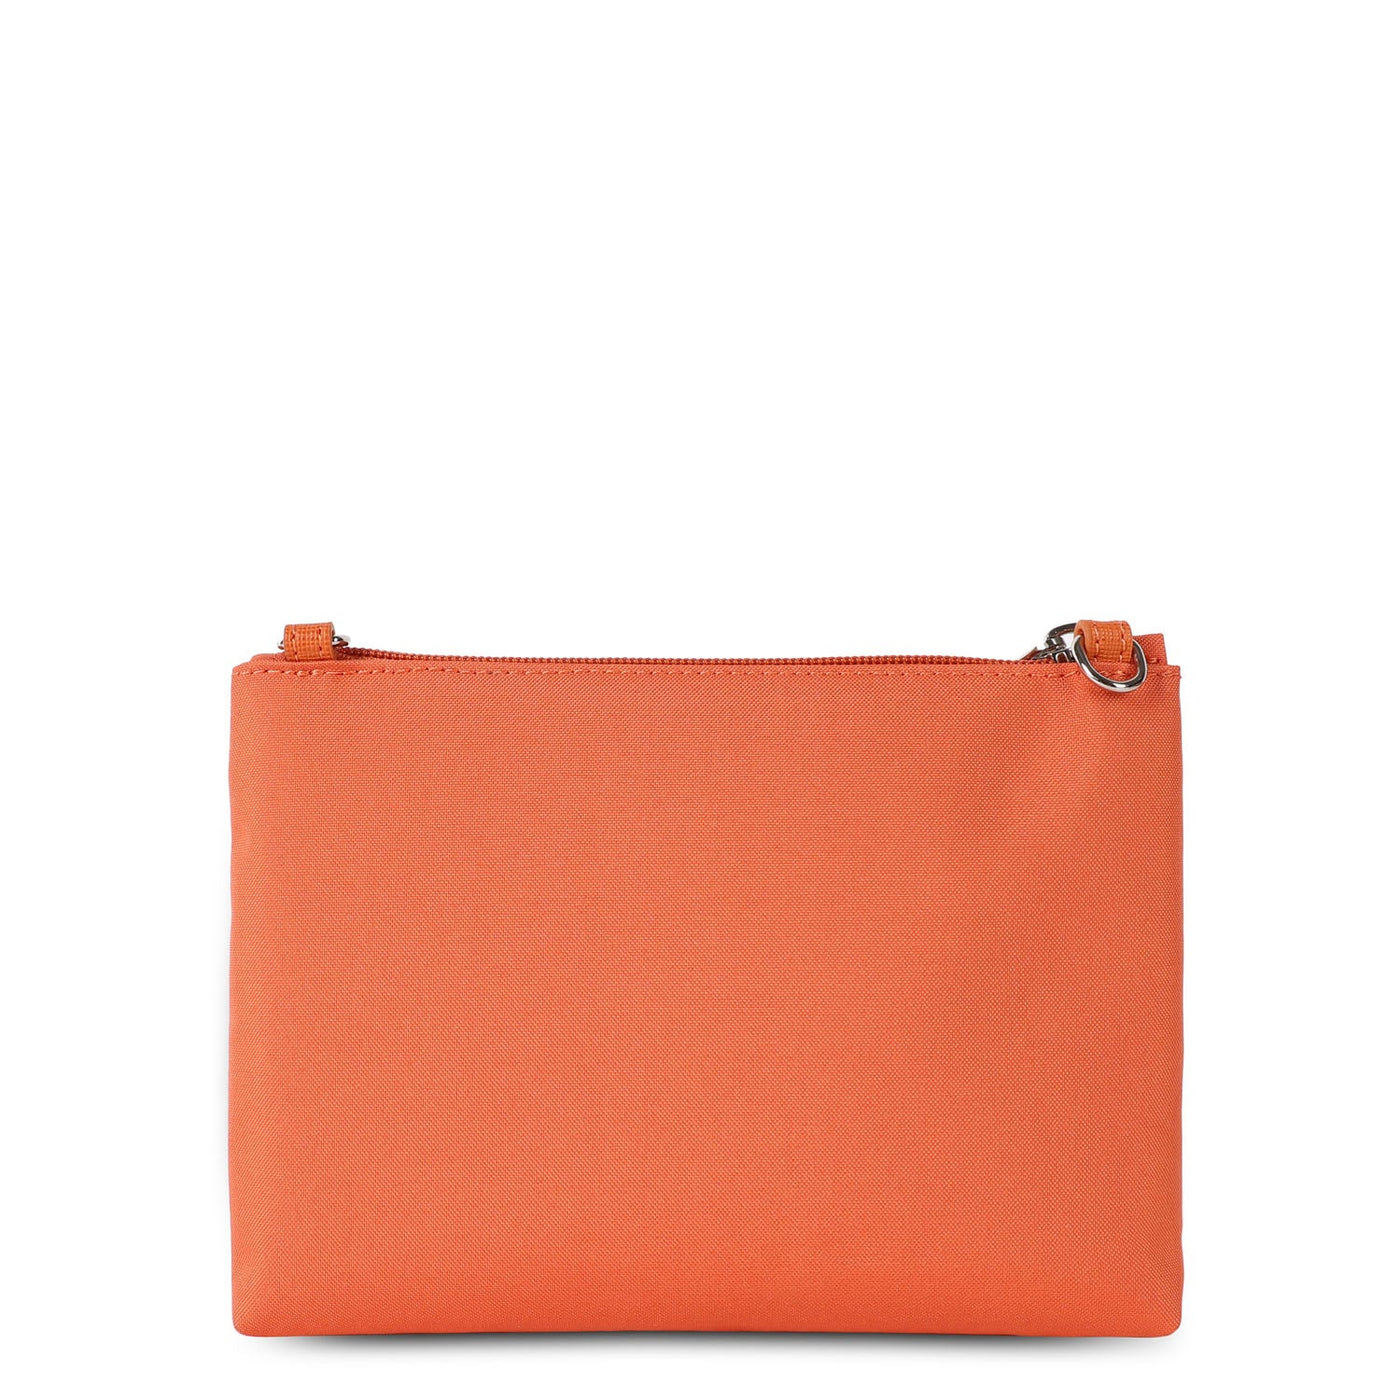 m double clutch - smart kba #couleur_orange